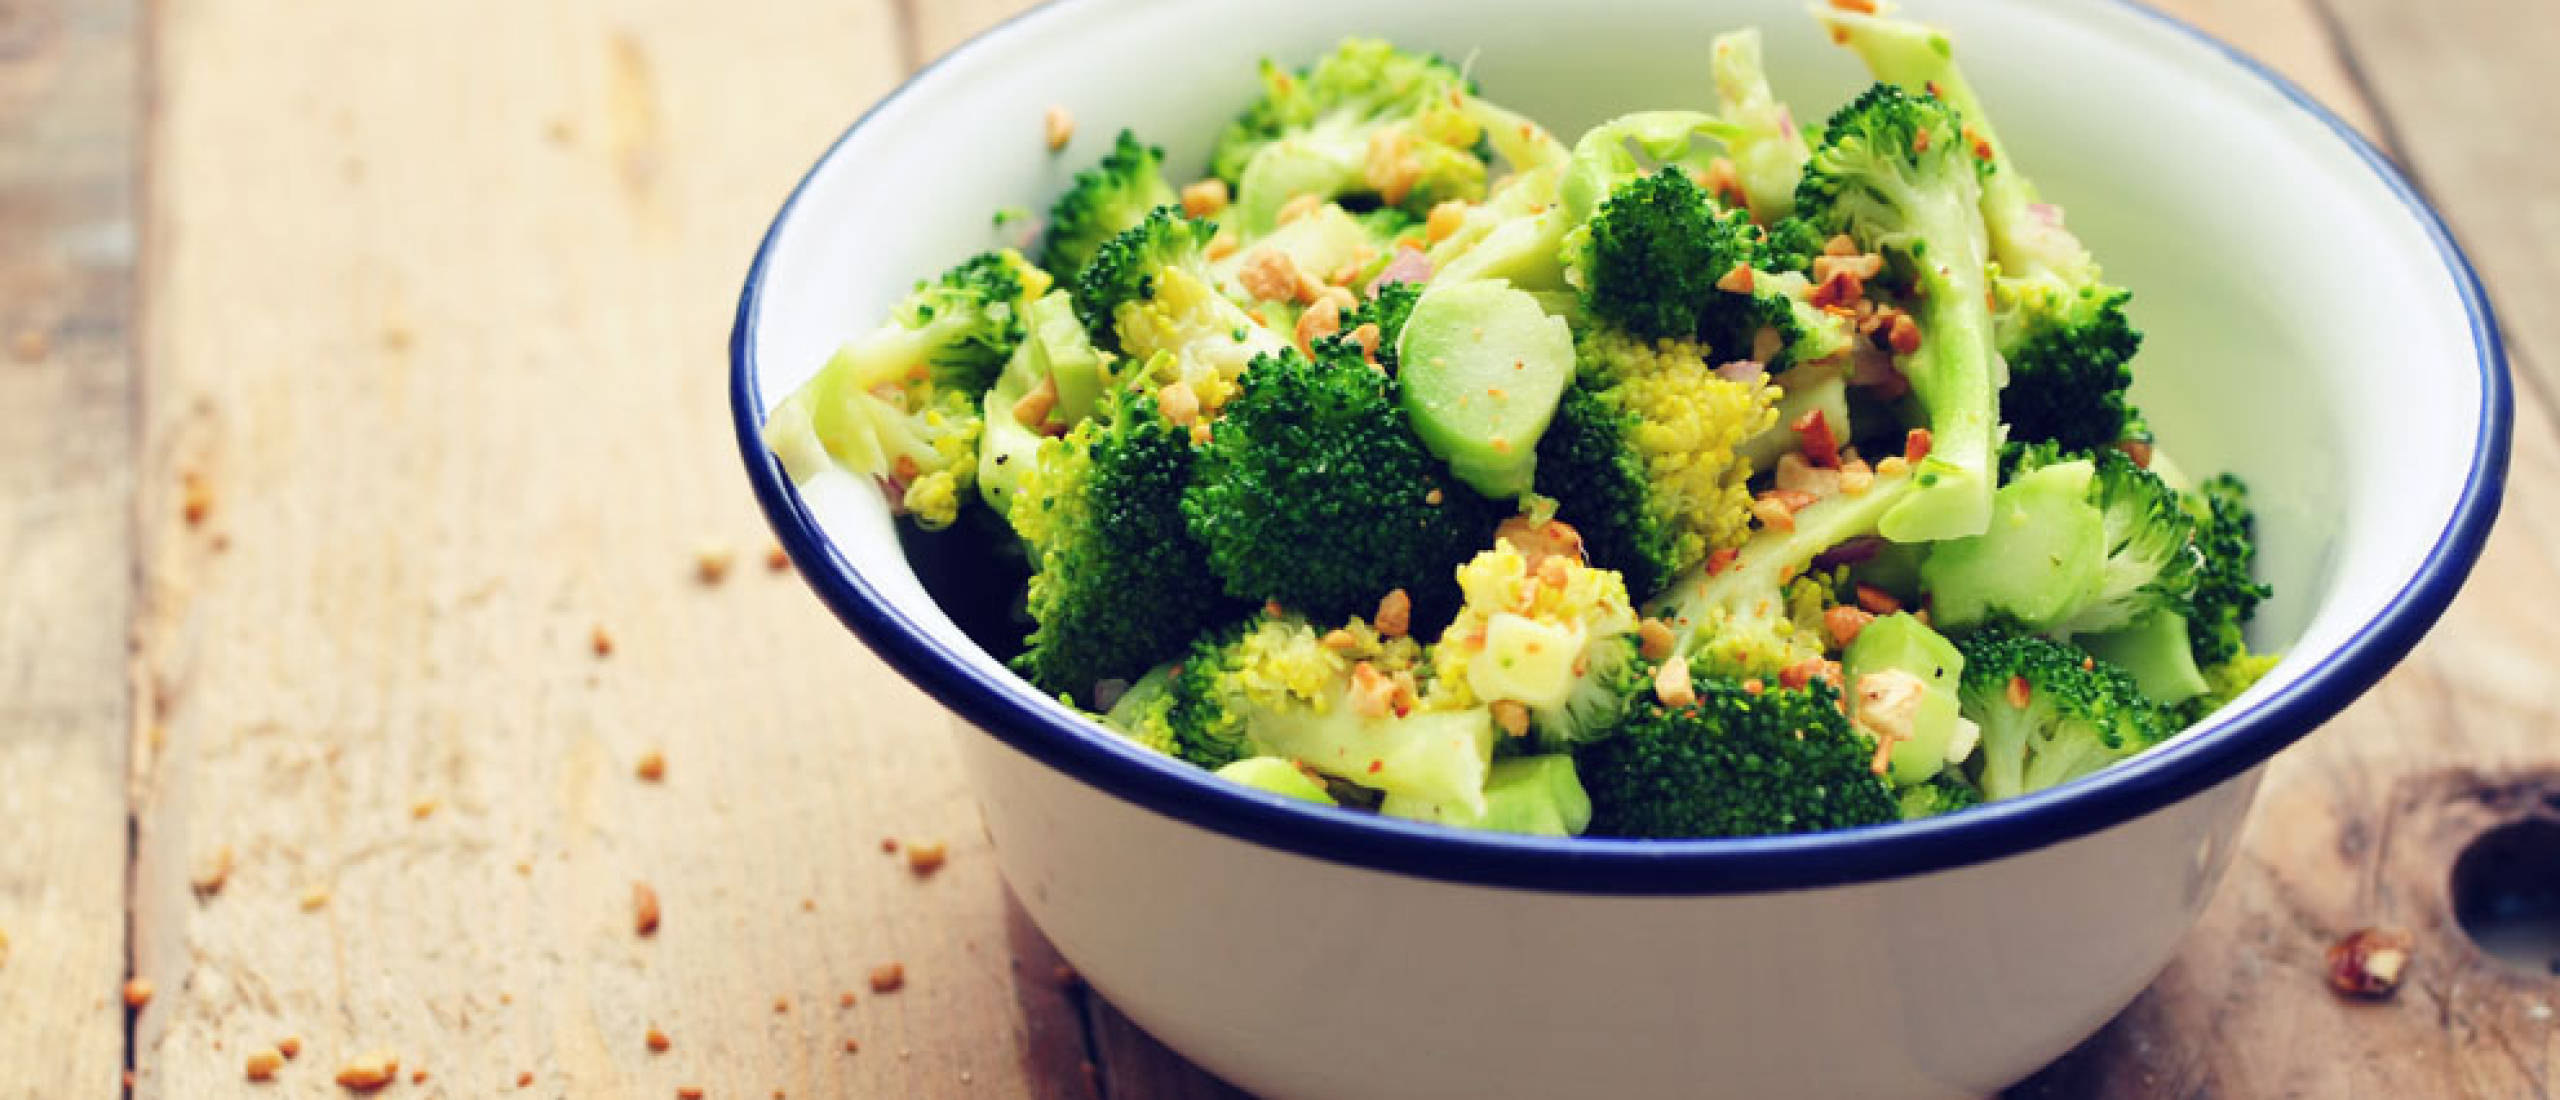 Recept salade met broccoli